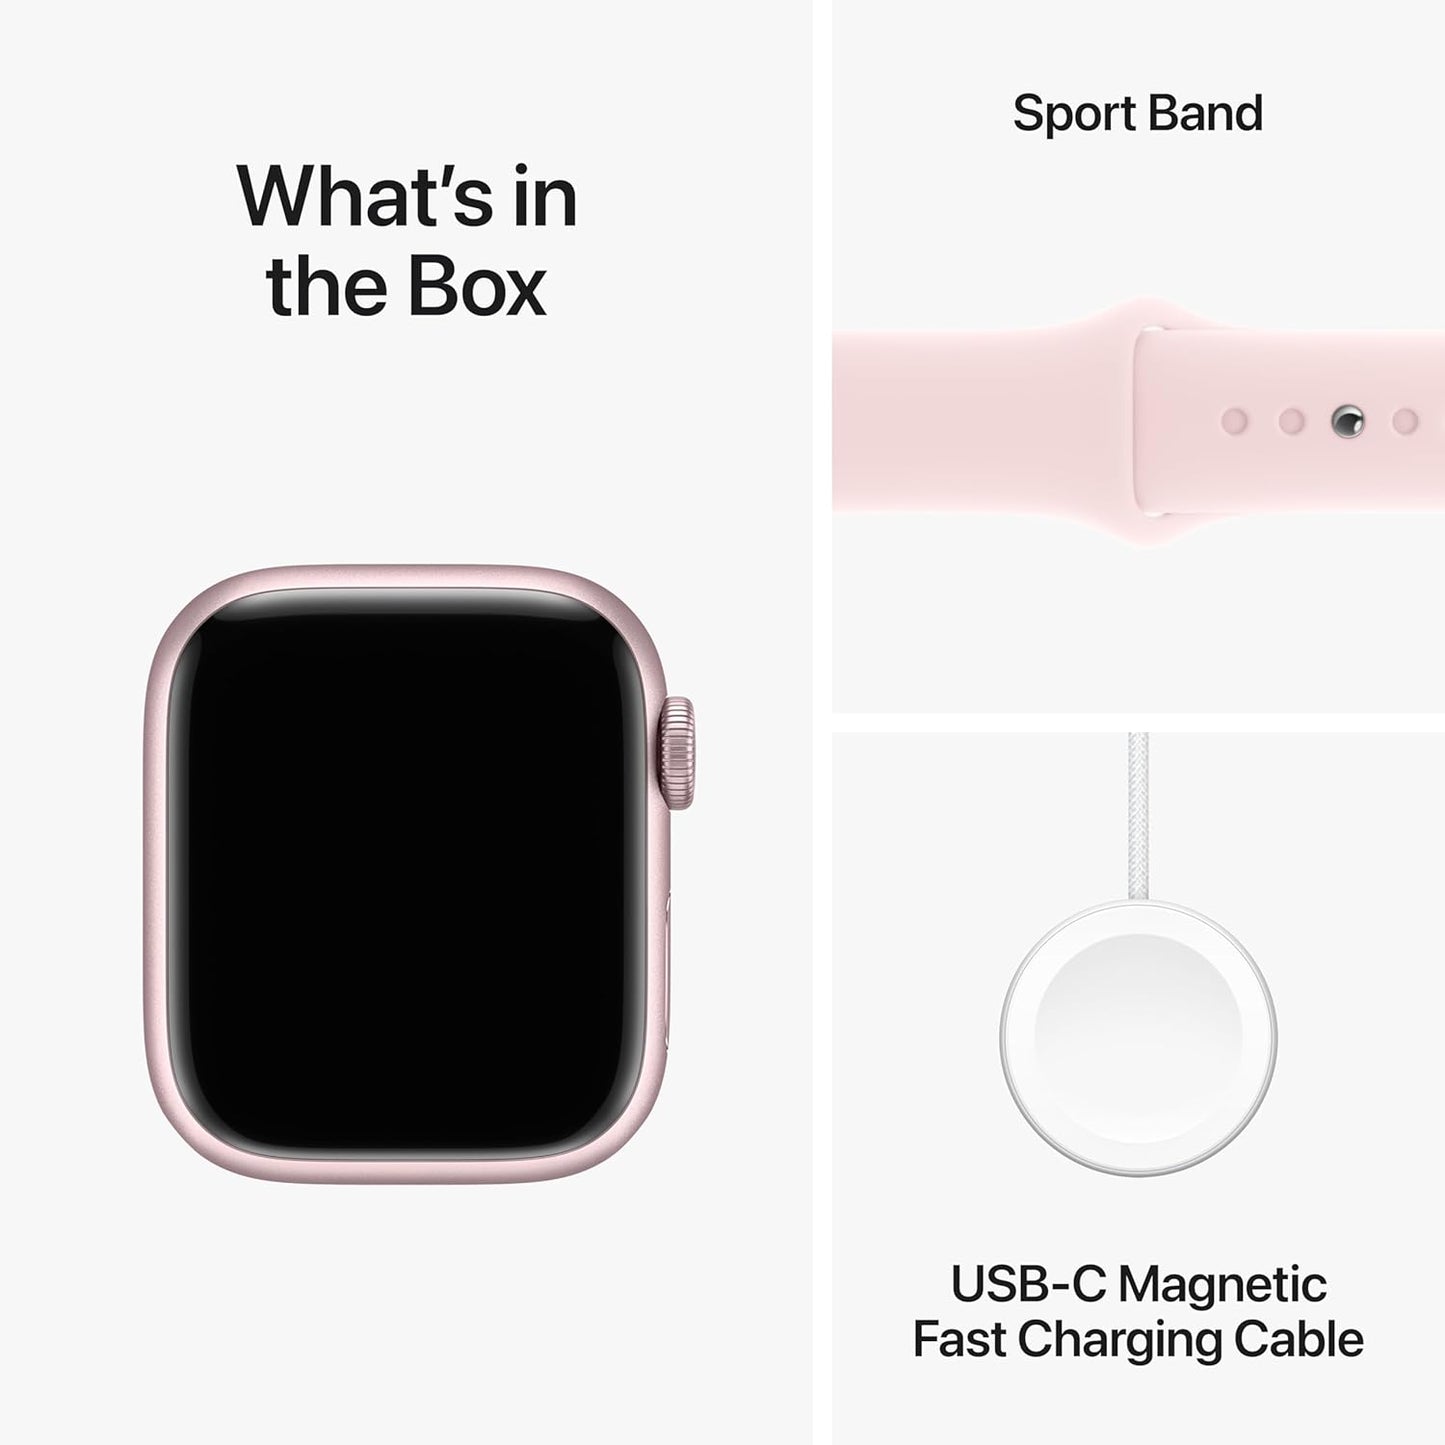 Apple Watch Series 9 [GPS + Cellular 41mm] ساعة ذكية مع هيكل من الألومنيوم الوردي وحزام رياضي وردي S/M. جهاز تتبع اللياقة البدنية، وتطبيقات أكسجين الدم وتخطيط القلب، وشاشة شبكية العين التي تعمل دائمًا (متجددة)